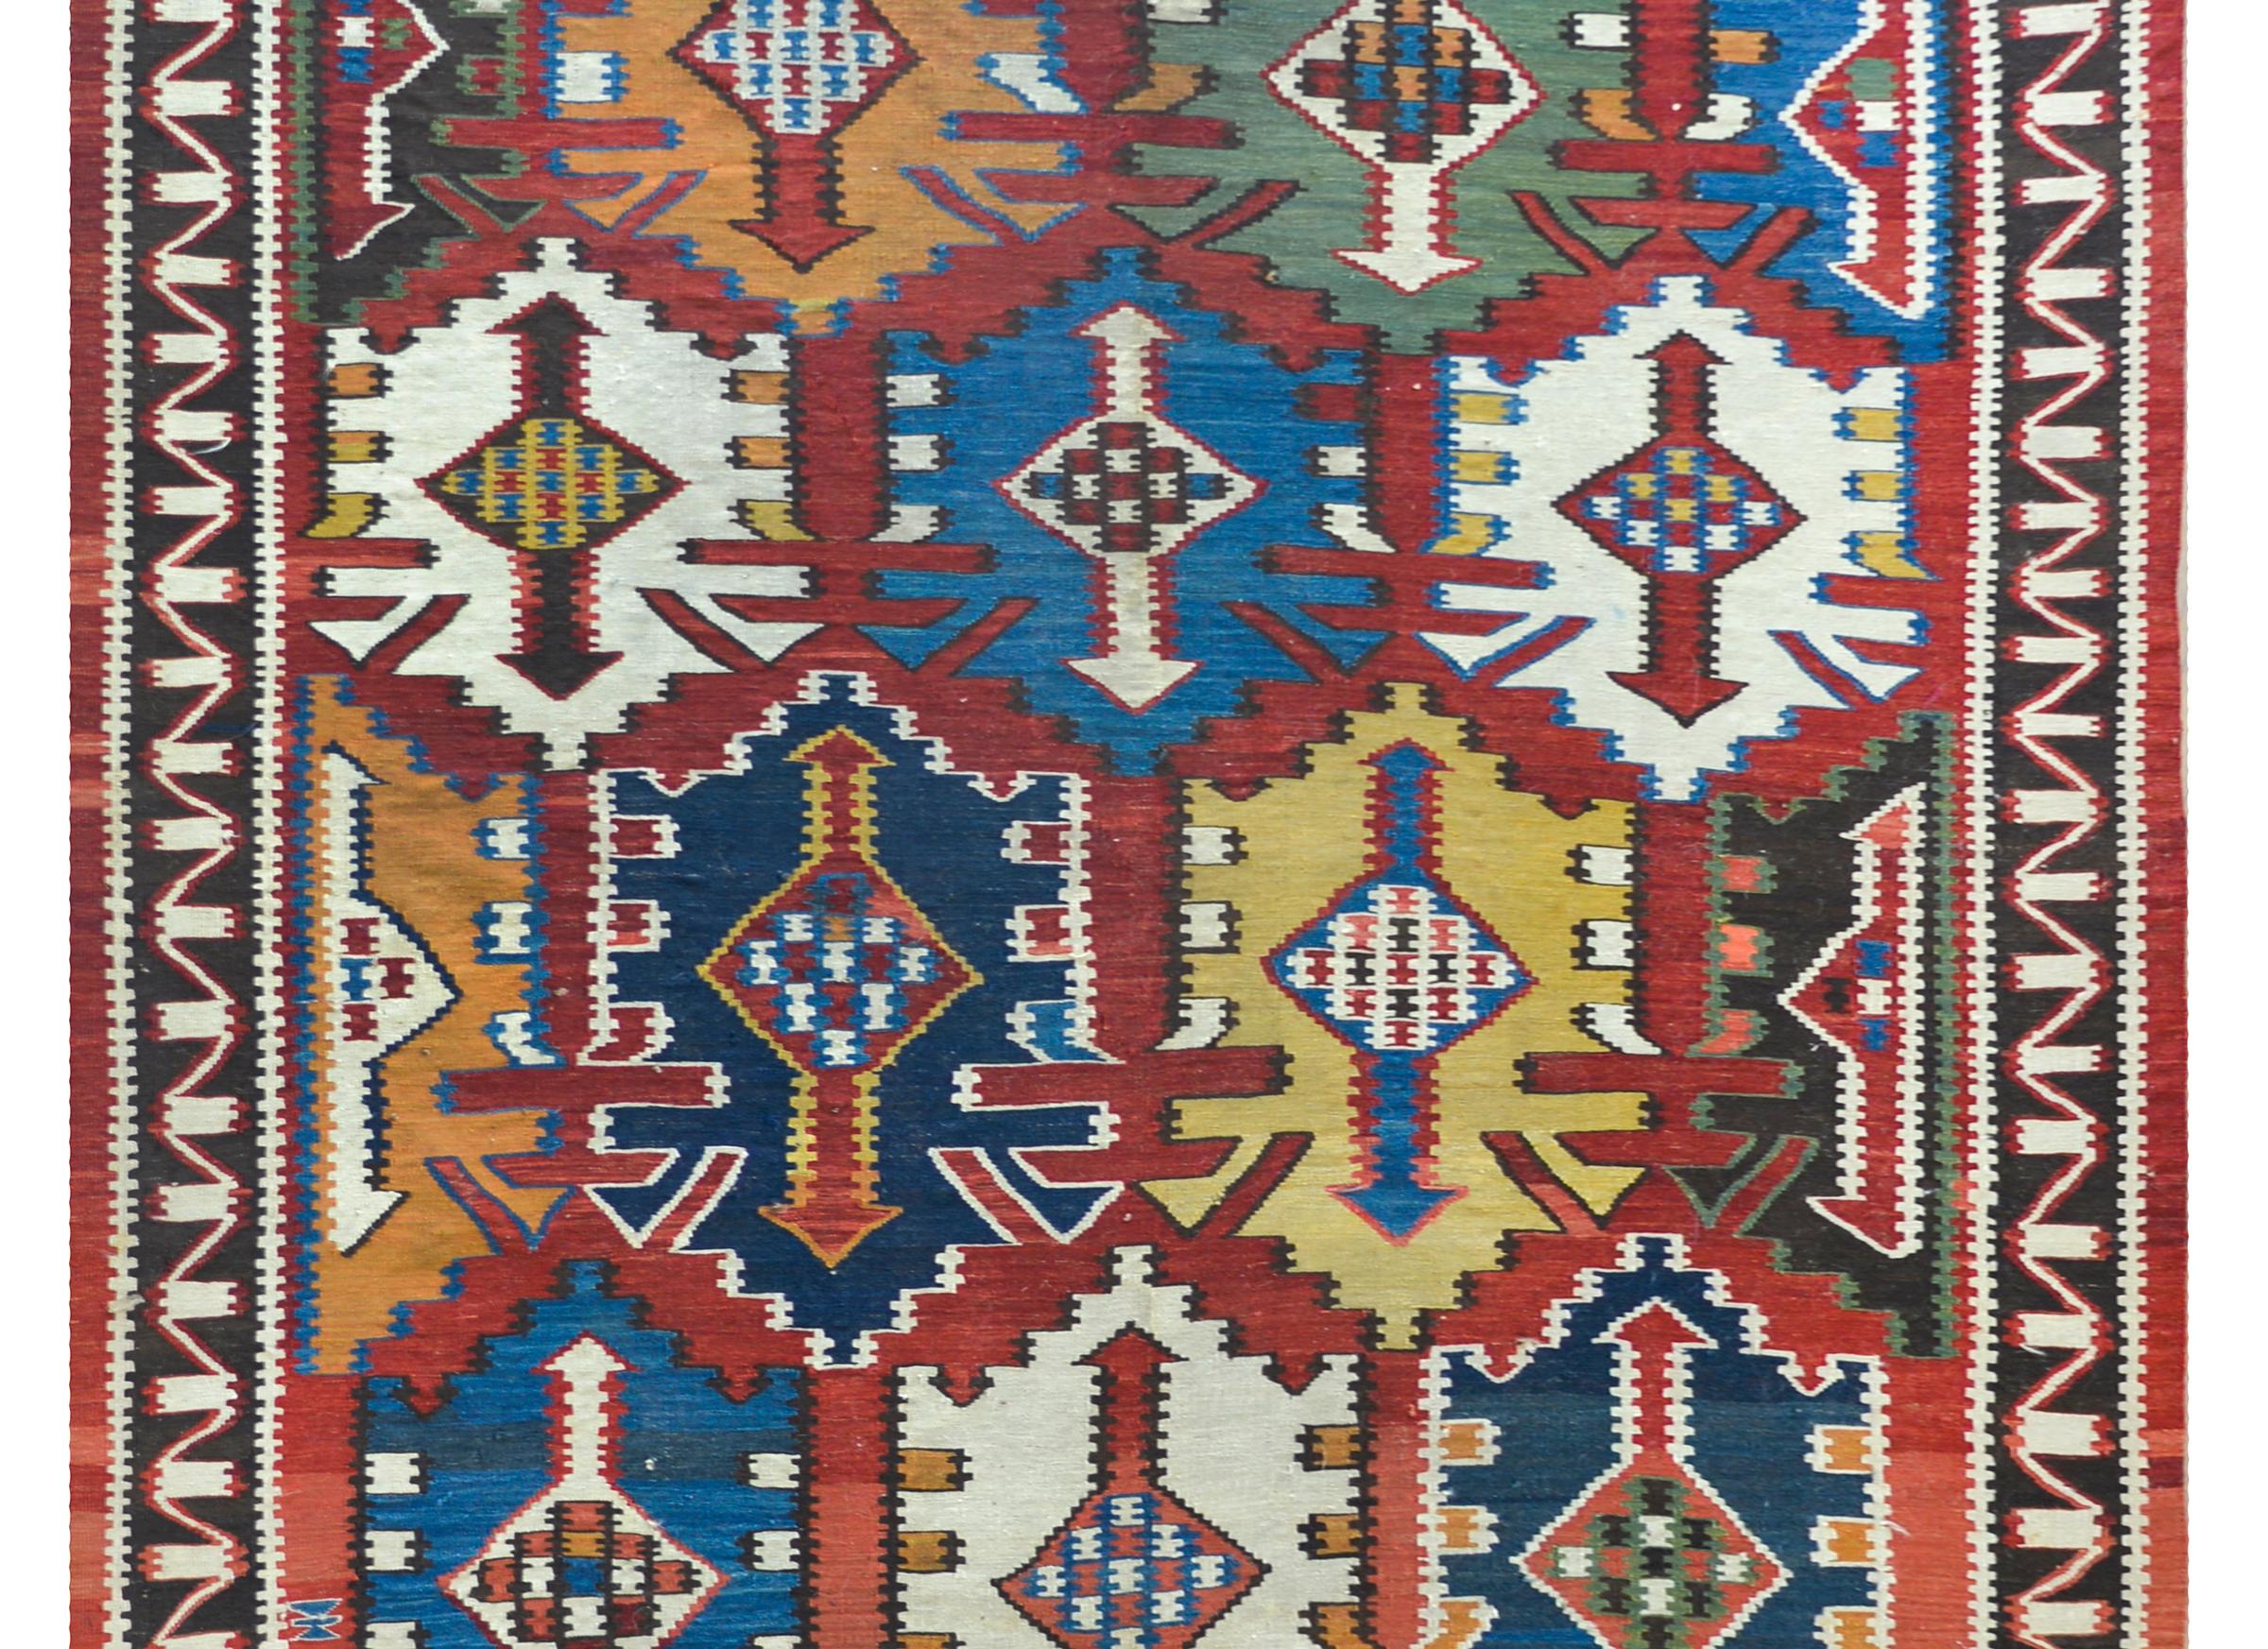 Un rare et étonnant tapis kilim Persan Kuba du début du 20ème siècle avec un étonnant motif floral stylisé multicolore à grande échelle sur un fond cramoisi, et entouré d'une bordure rayée.